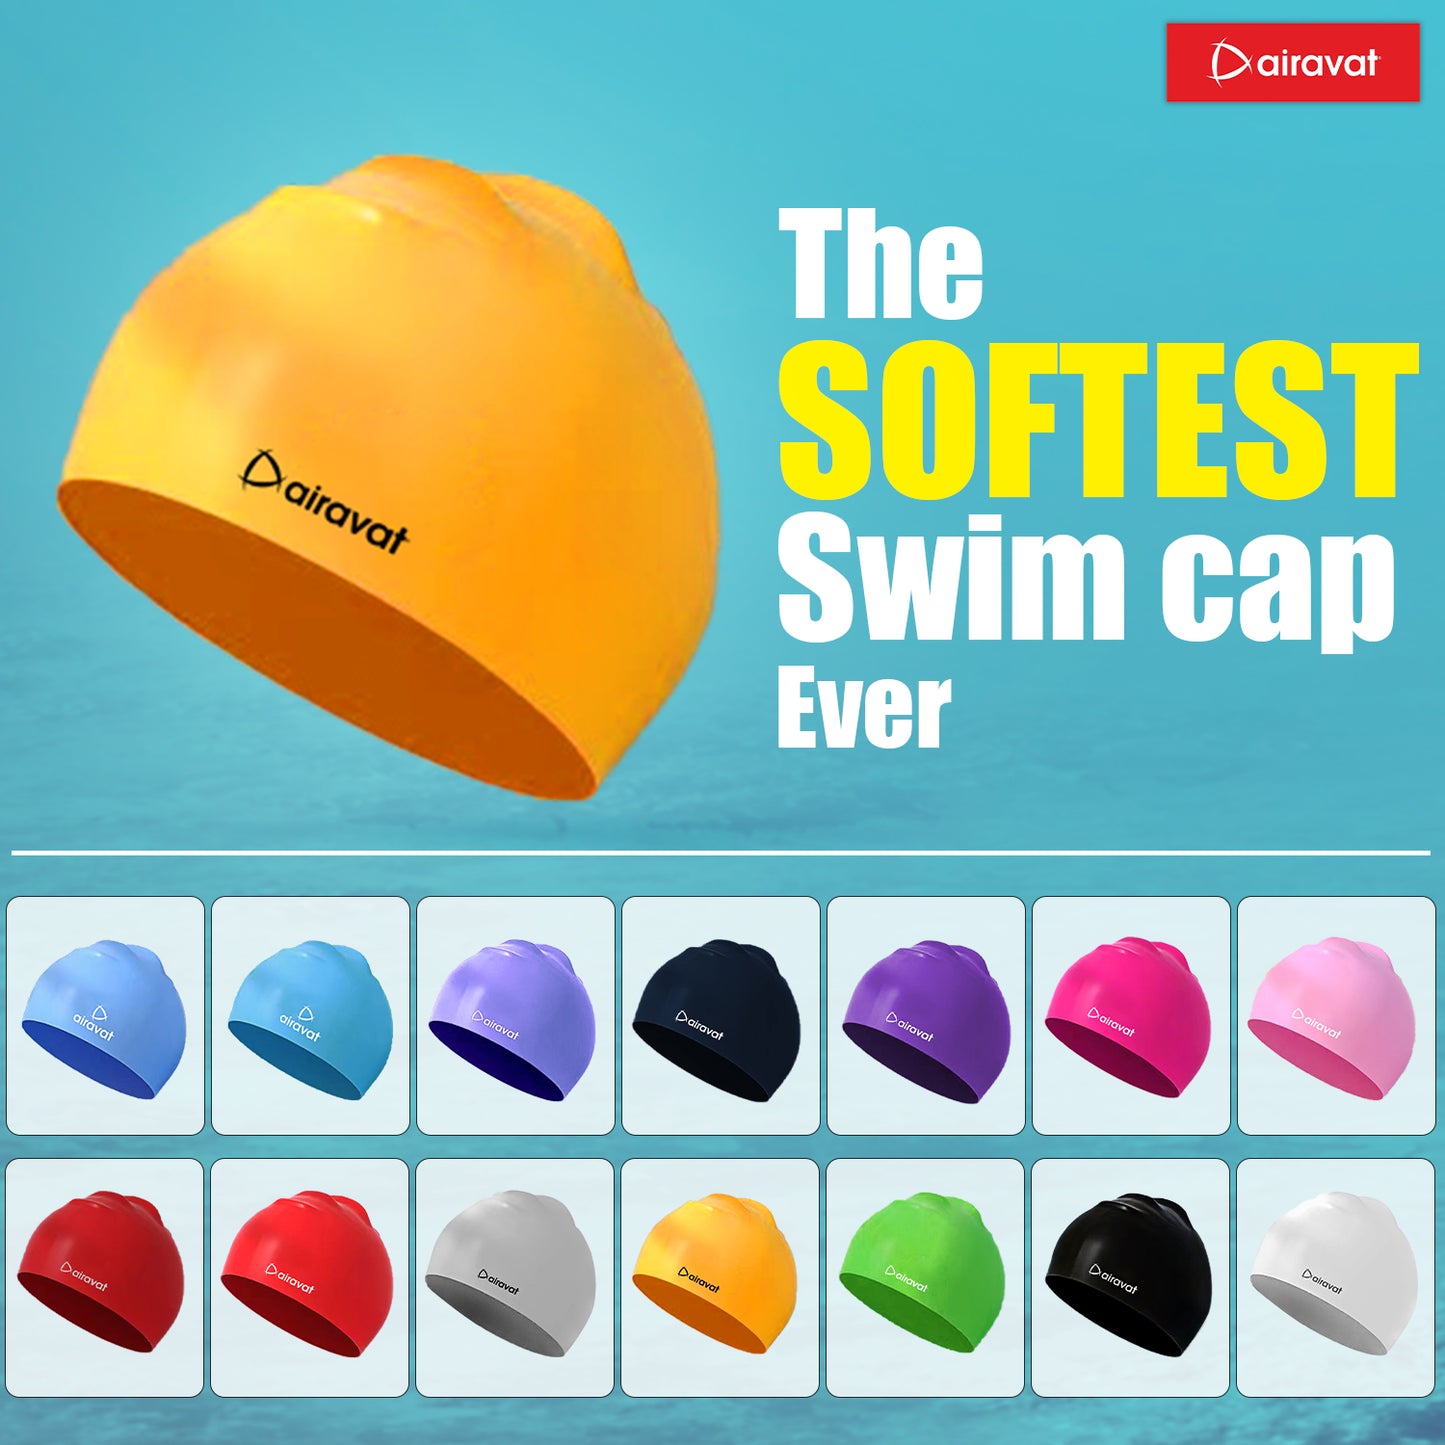 CLASSIC PLAIN SWIMMING CAP